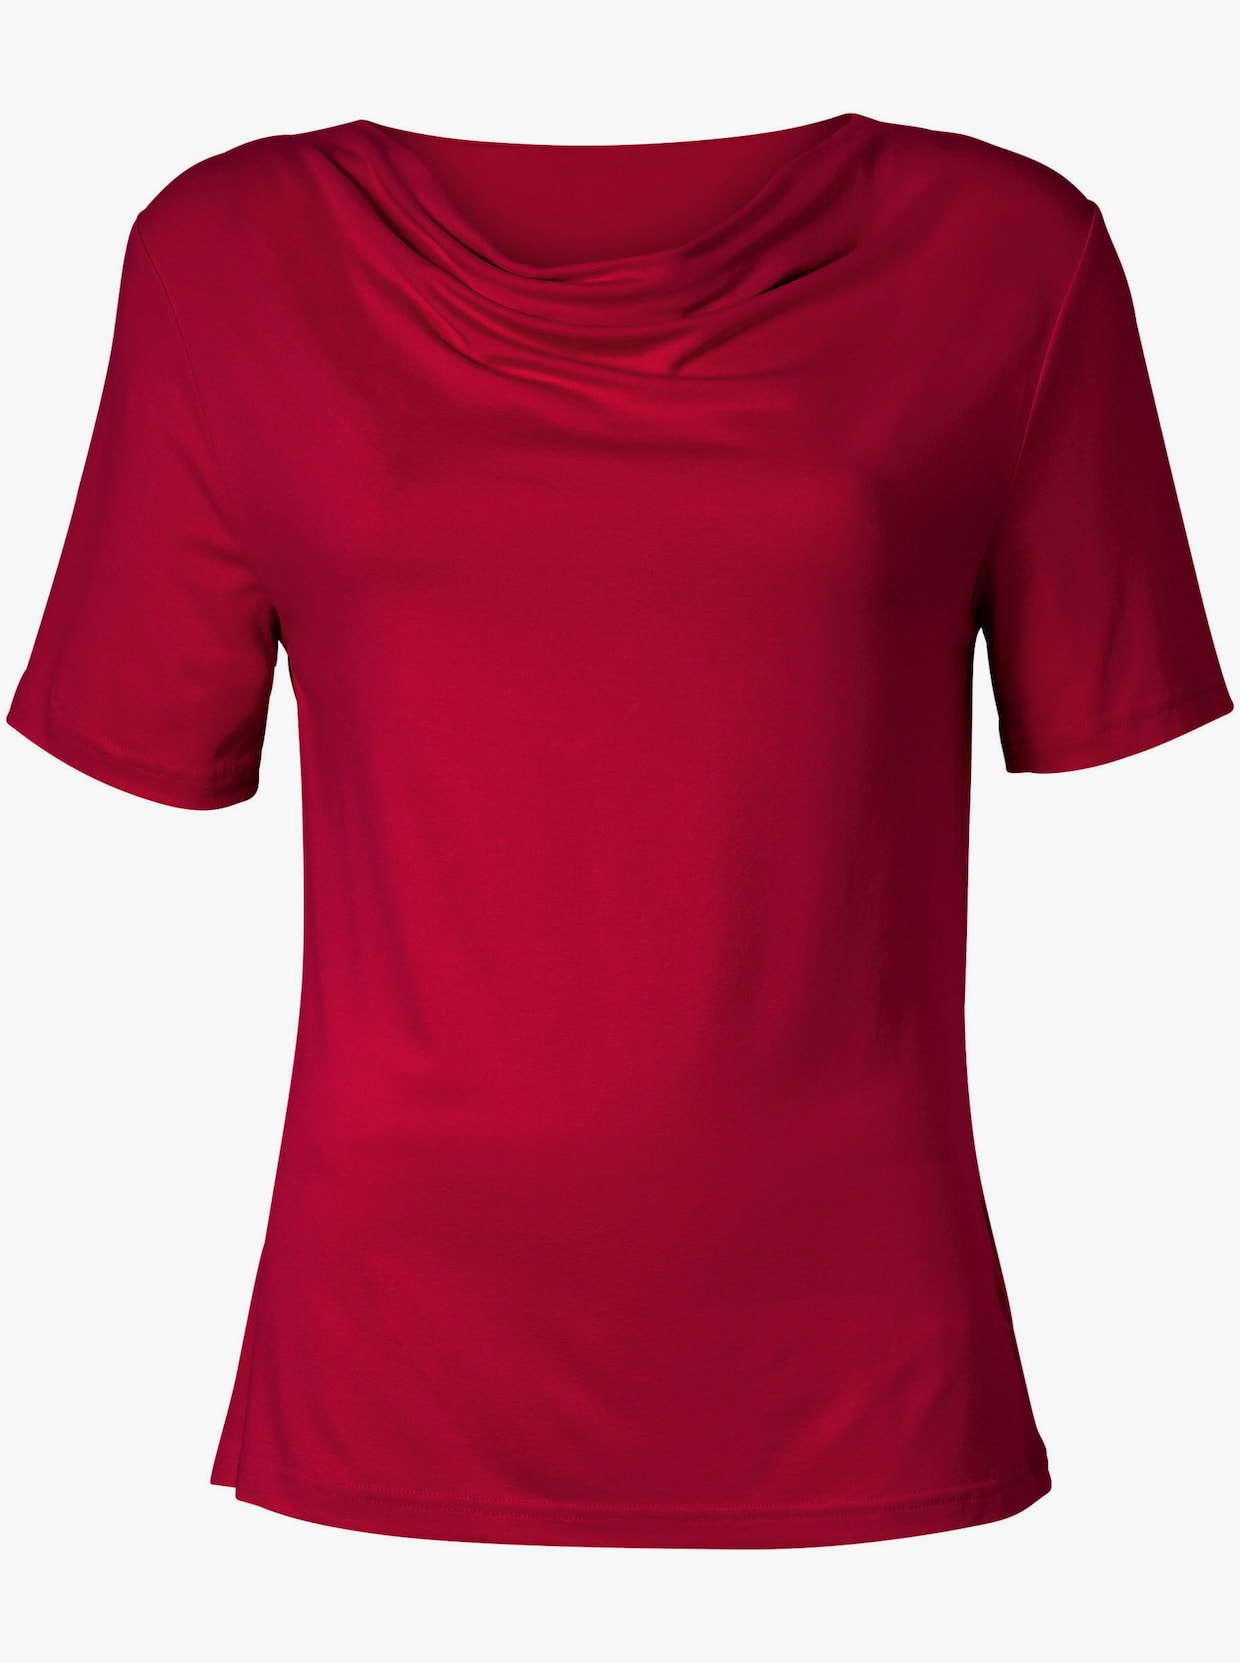 Tričko s vodopádovým golierom - červená